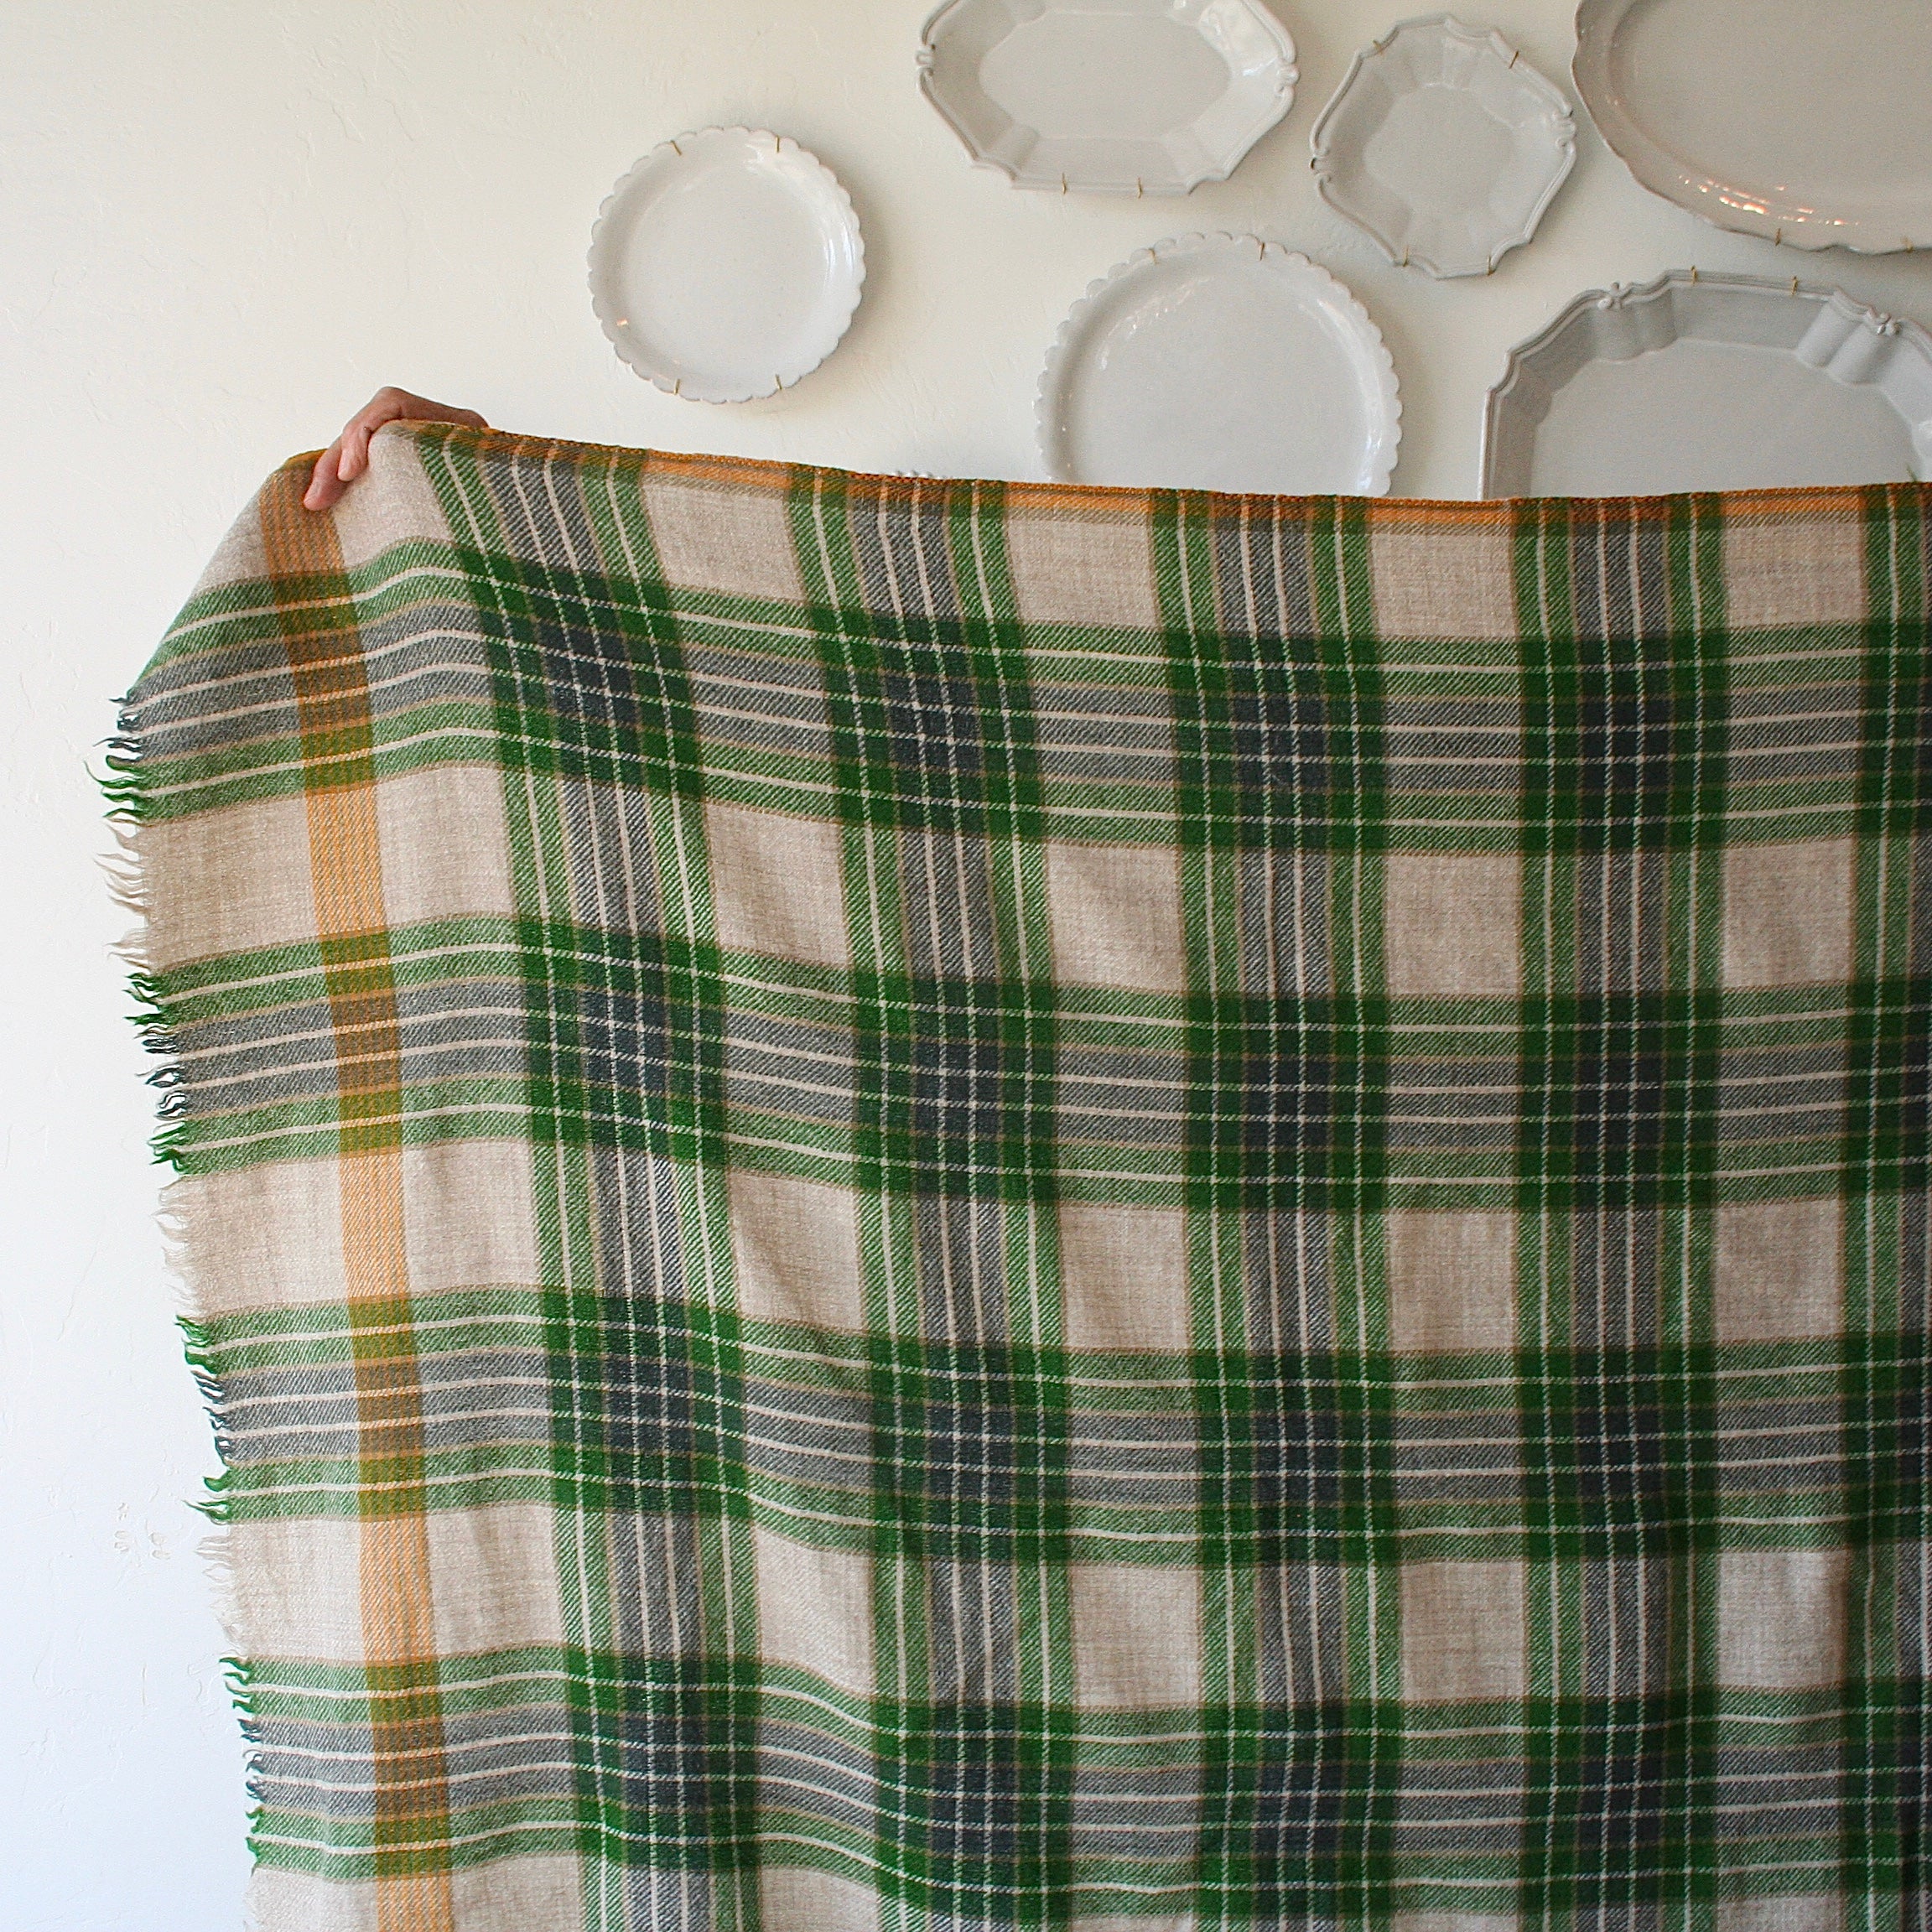 Moismont Wool Plaid Blanket - Evergreen + Natural